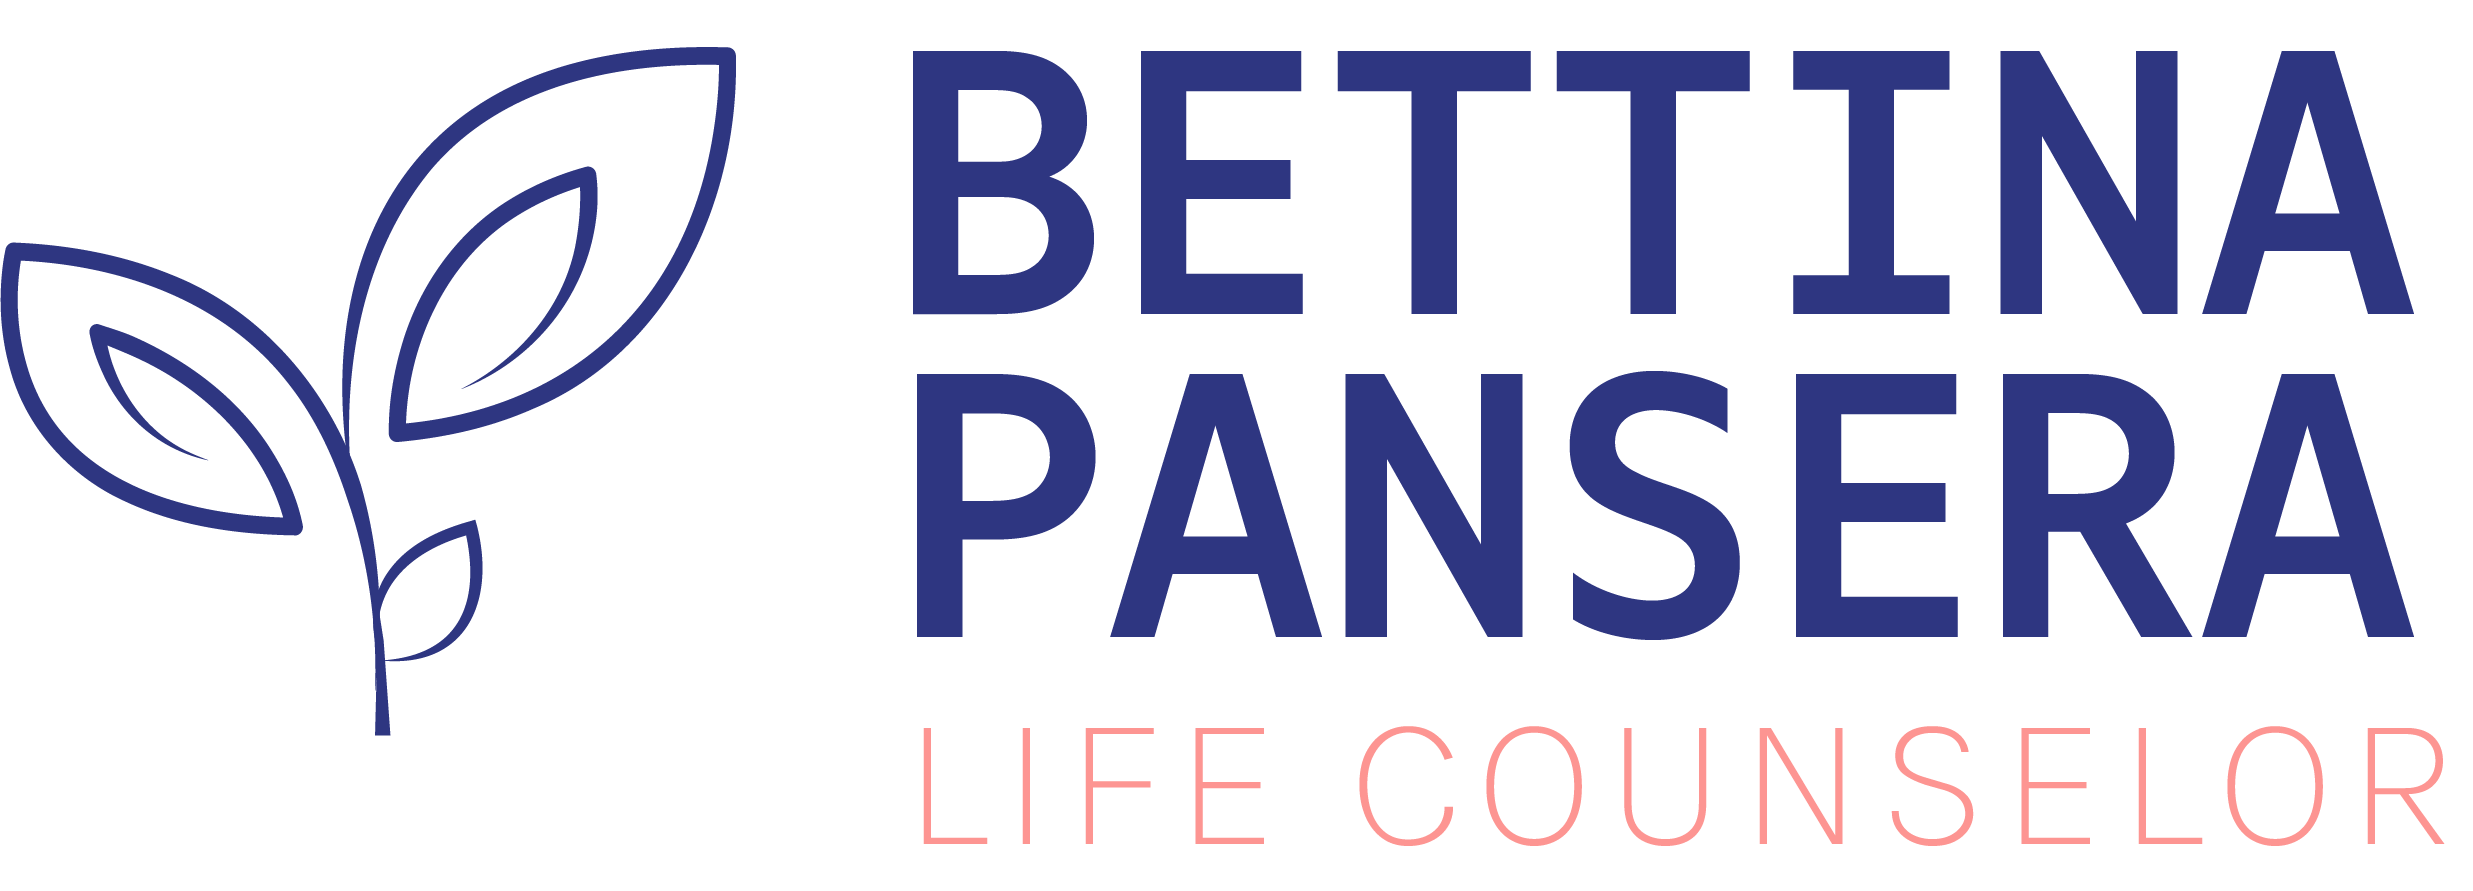 Bettina Pansera - Life Counselor